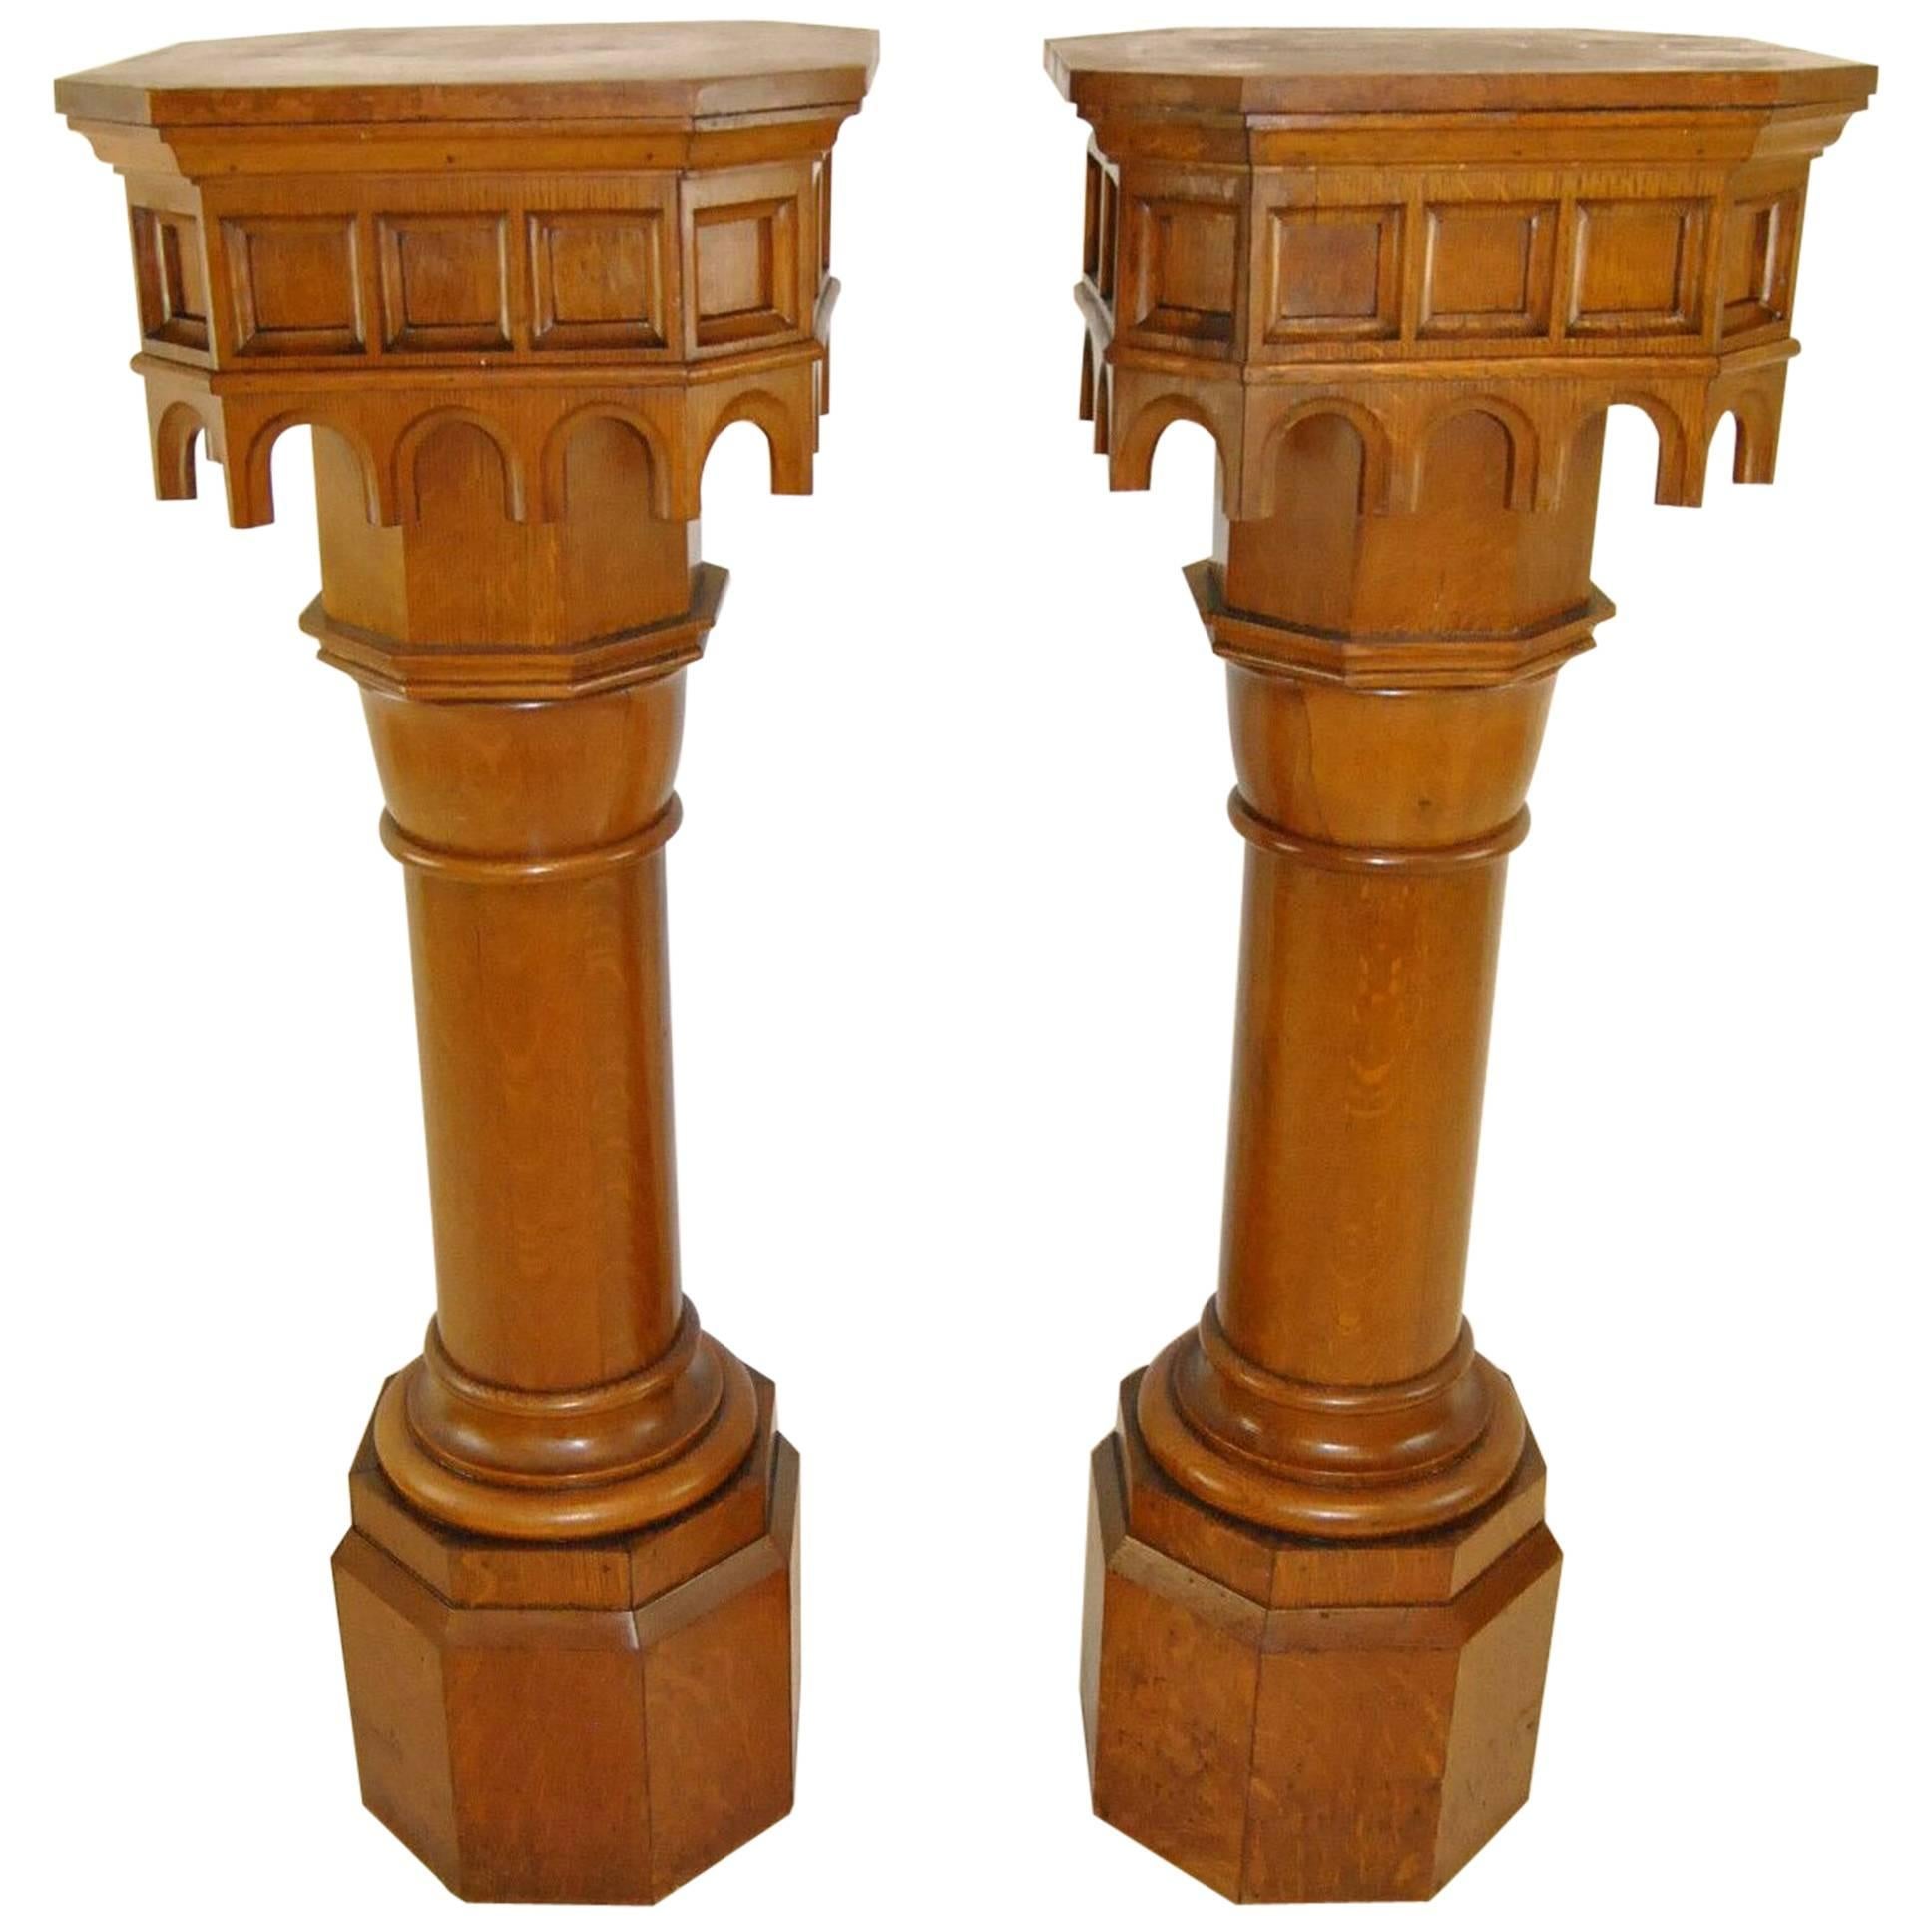 Pair of Antique Gothic Oak Pillars / Pedestals 53 1/2"